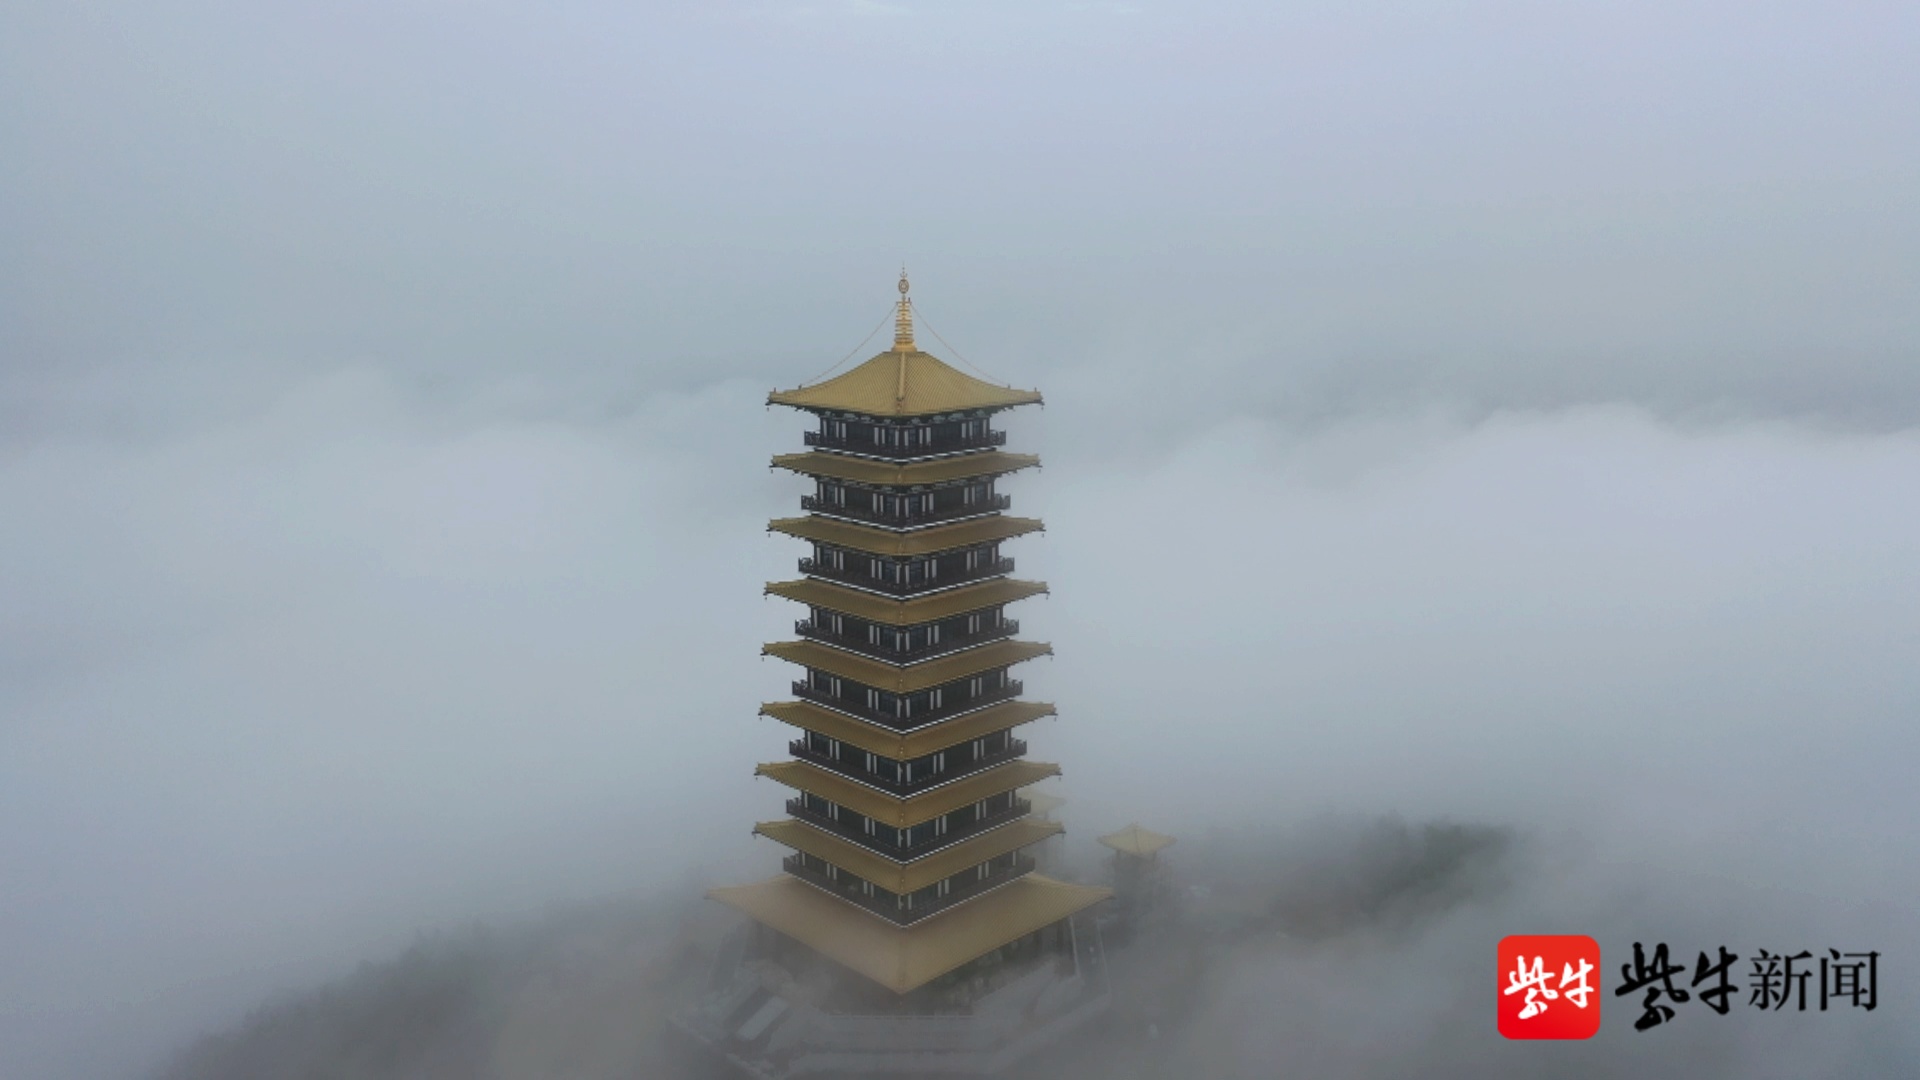 6月14日,记者在连云港市灌云县大伊山上空拍摄了一组画面,空中的大伊